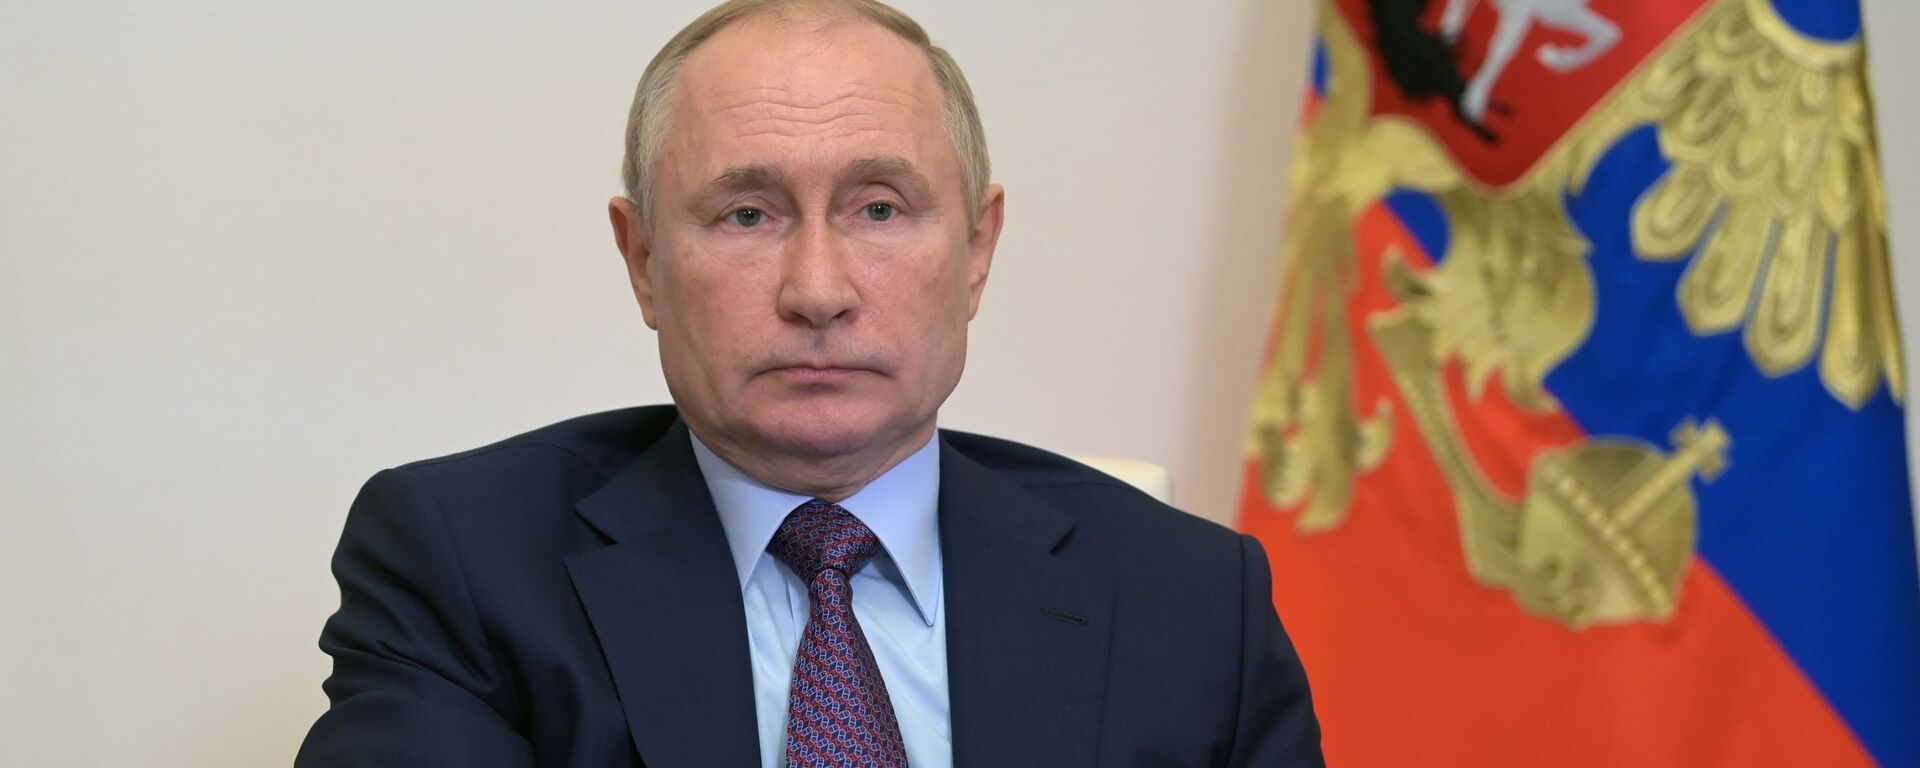 Vladimir Putin, presidente da Rússia, realiza reunião sobre o desenvolvimento energético por videoconferência, 6 de outubro de 2021 - Sputnik Brasil, 1920, 06.10.2021